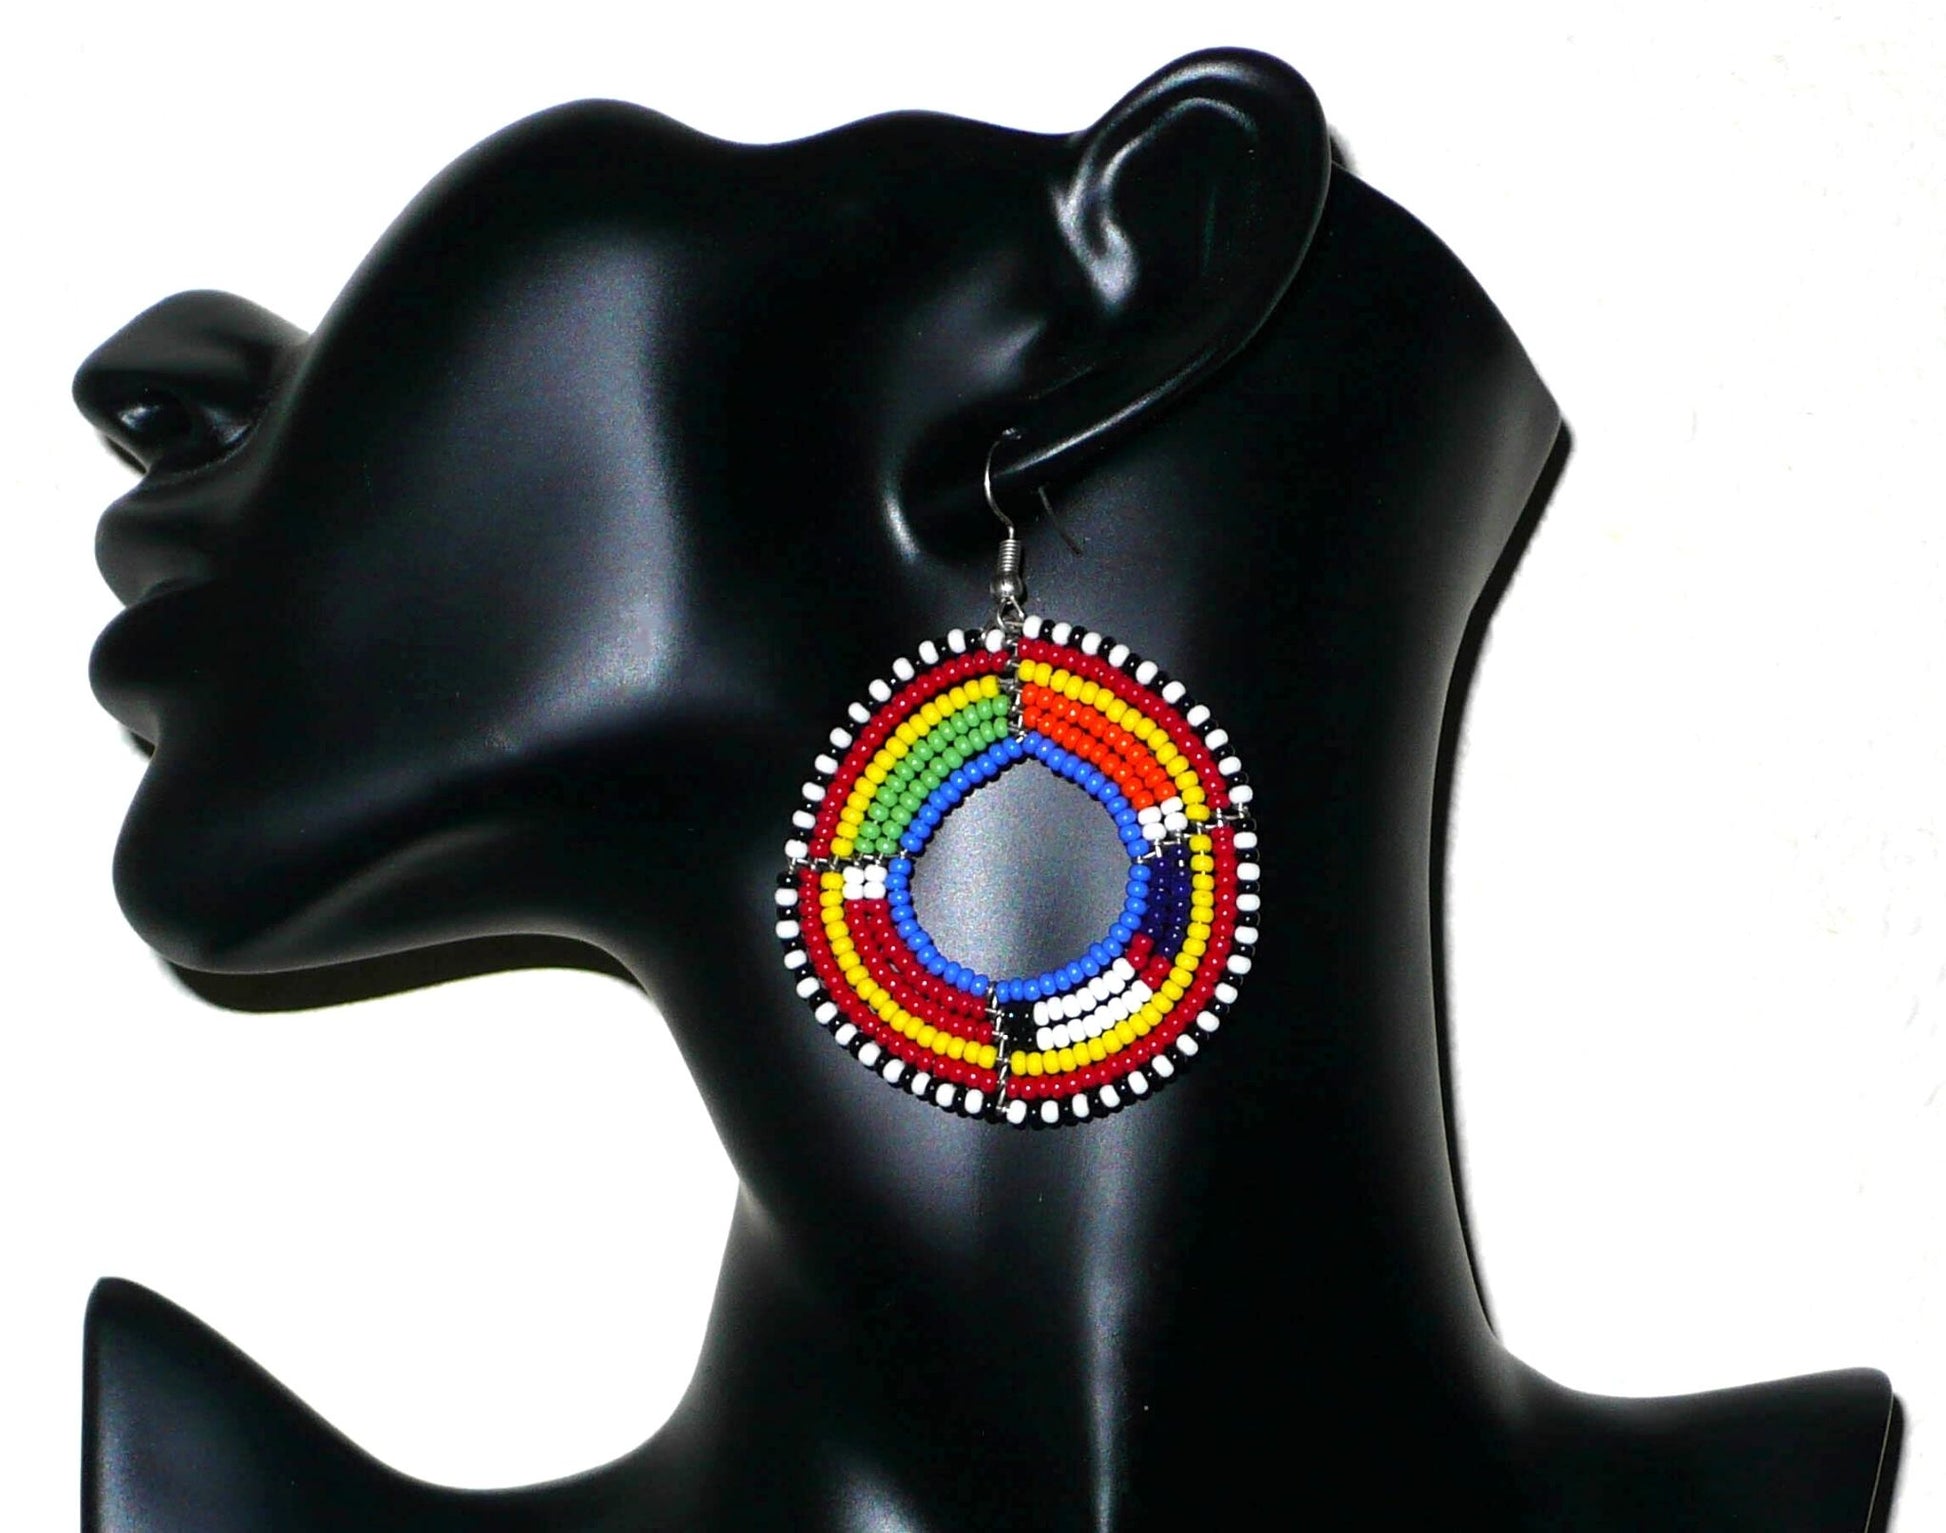 Boucles d'oreilles africaines rondes à motifs traditionnels Massai. Elles se composent de perles de rocaille bleues et multicolores enfilées sur six brins de fils de fer montés en forme de cercles. De taille moyenne, ces boucles d'oreilles mesurent 7 cm de long et 5 cm de large. Timeless Fineries